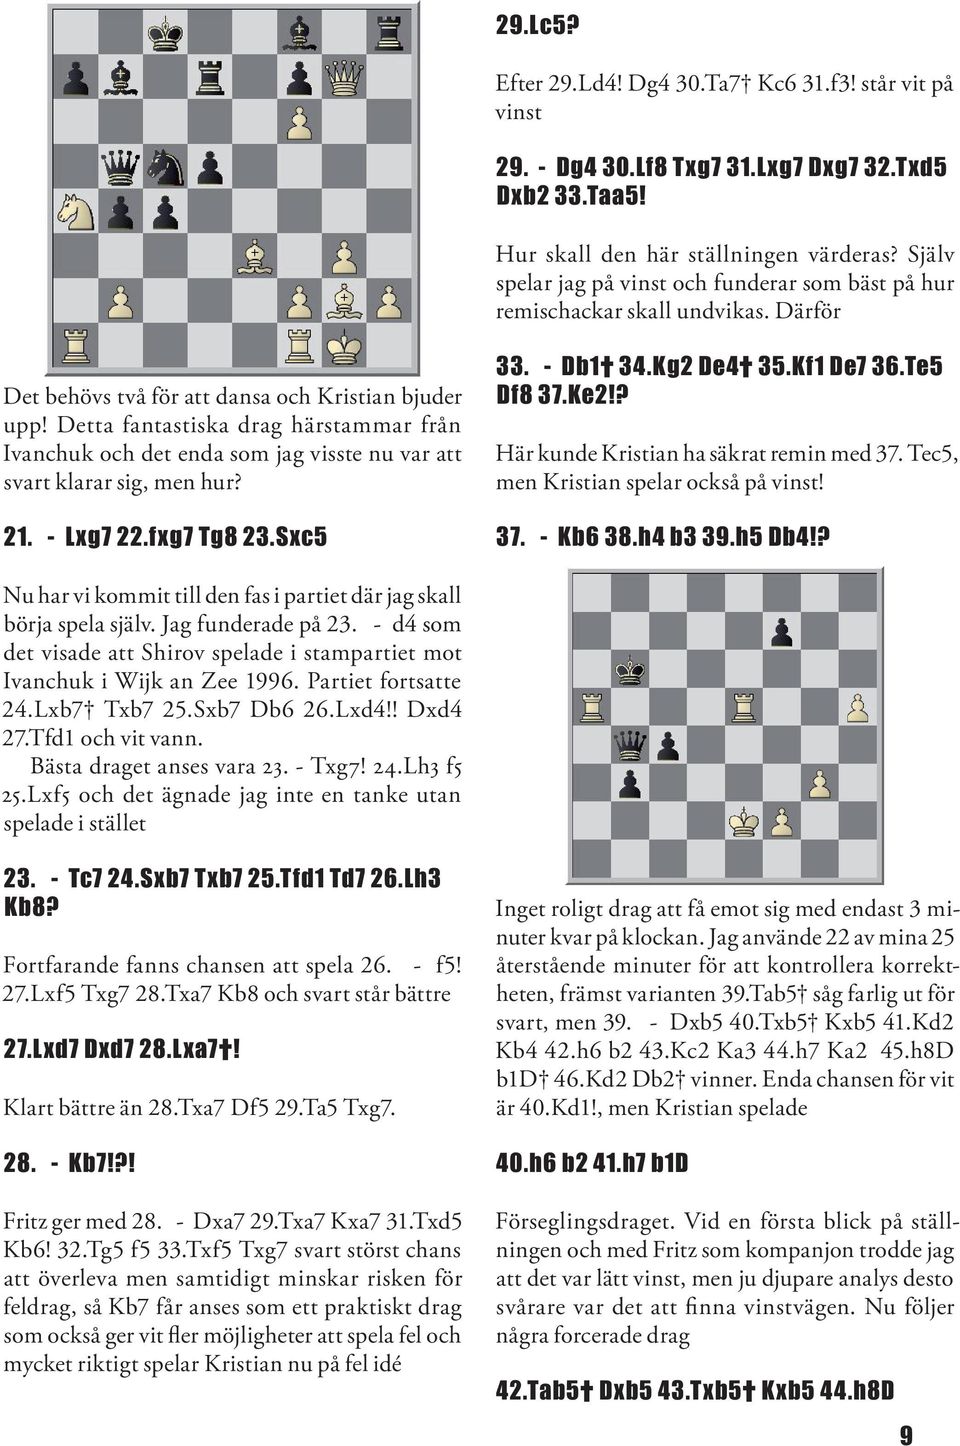 Detta fantastiska drag härstammar från Ivanchuk och det enda som jag visste nu var att svart klarar sig, men hur? 21. - Lxg7 22.fxg7 Tg8 23.Sxc5 33. - Db1 34.Kg2 De4 35.Kf1 De7 36.Te5 Df8 37.Ke2!